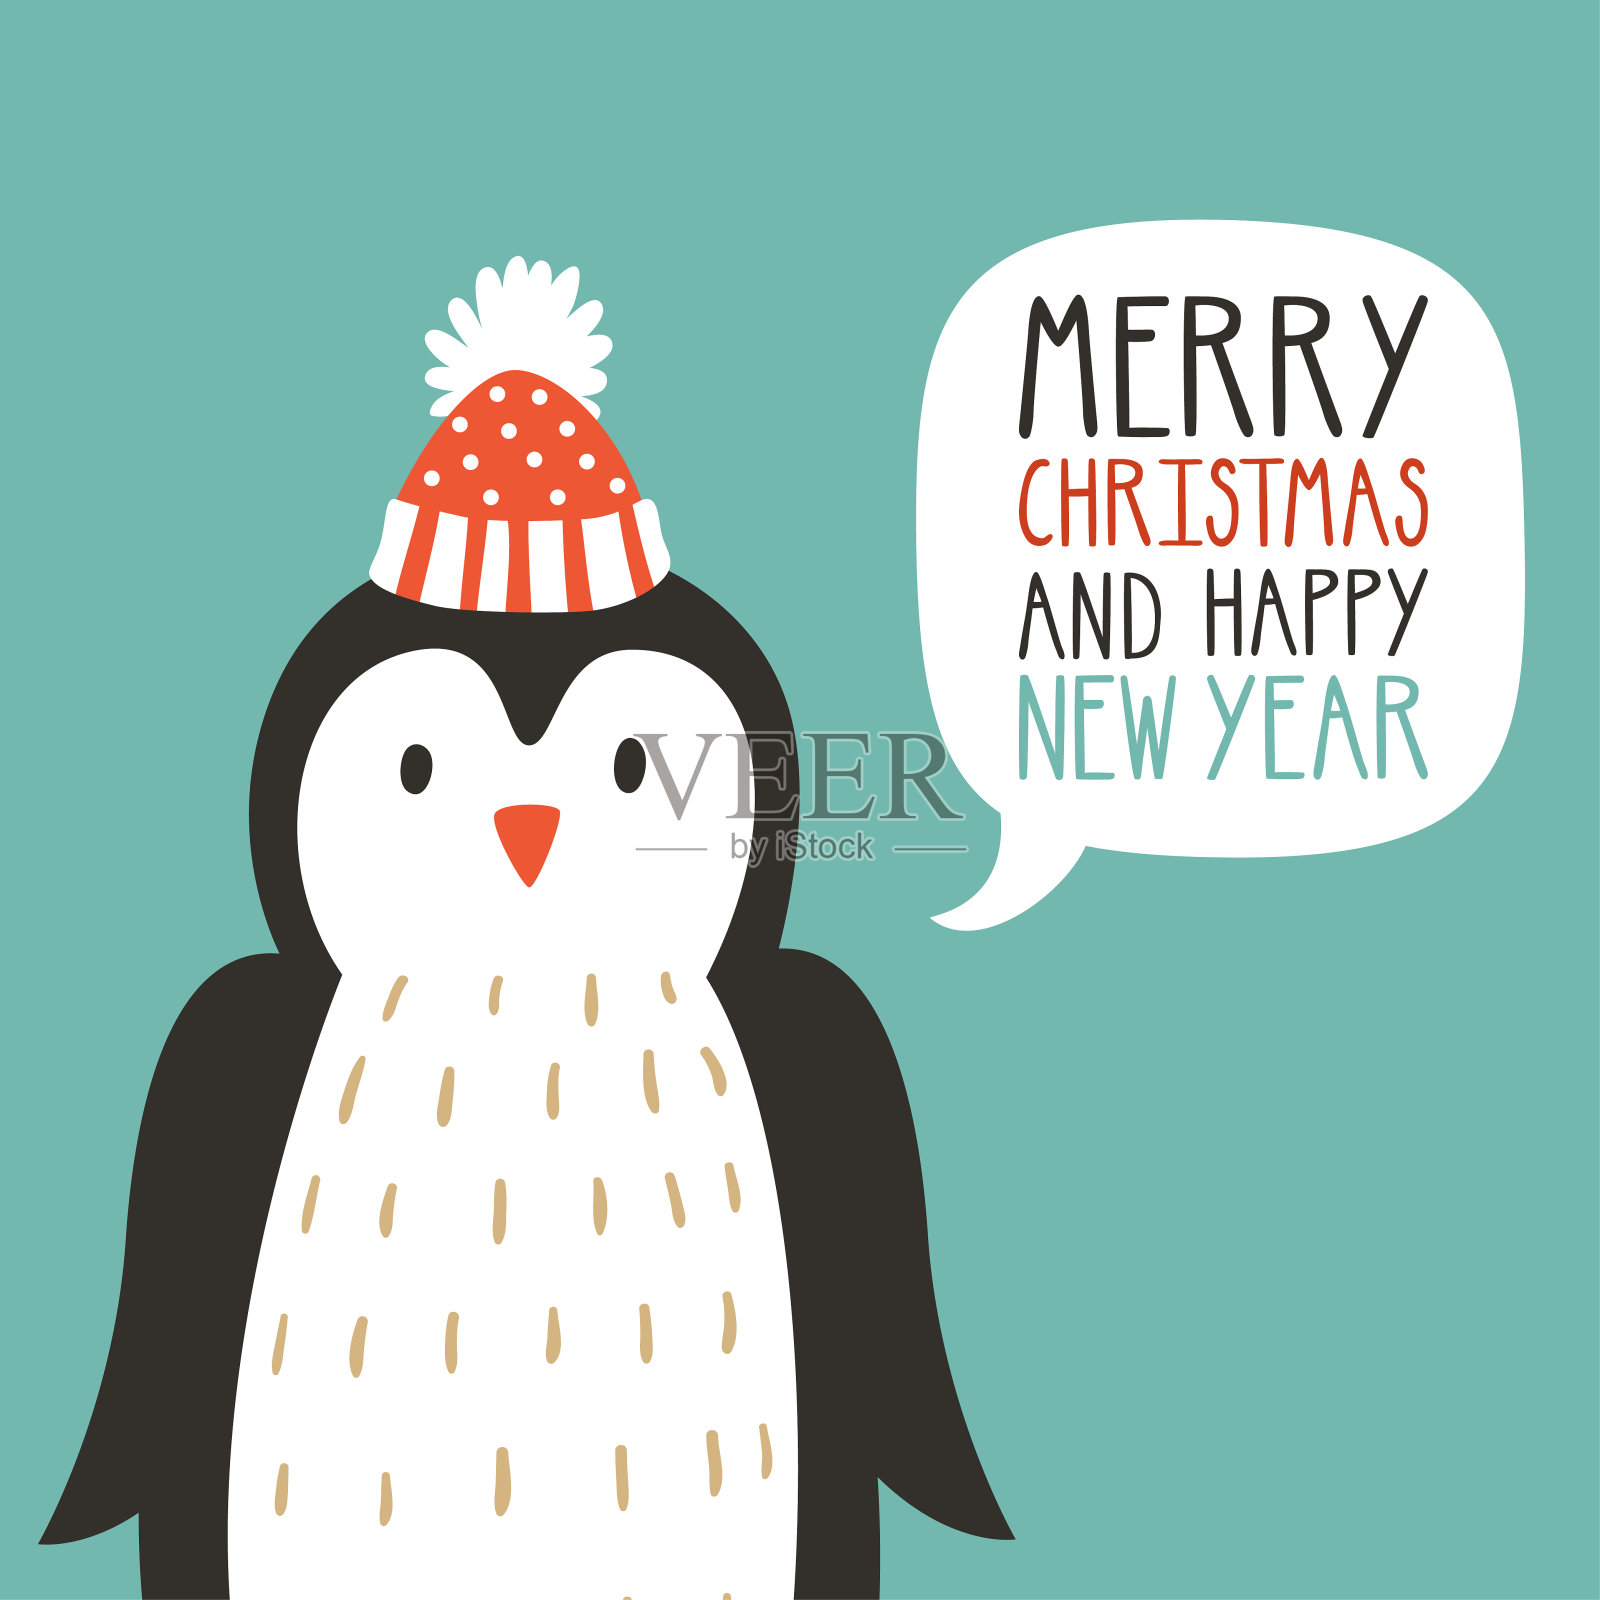 矢量假日插图可爱的企鹅在一顶帽子说“圣诞快乐和新年快乐”。圣诞背景与微笑卡通人物。冬天的贺卡。插画图片素材